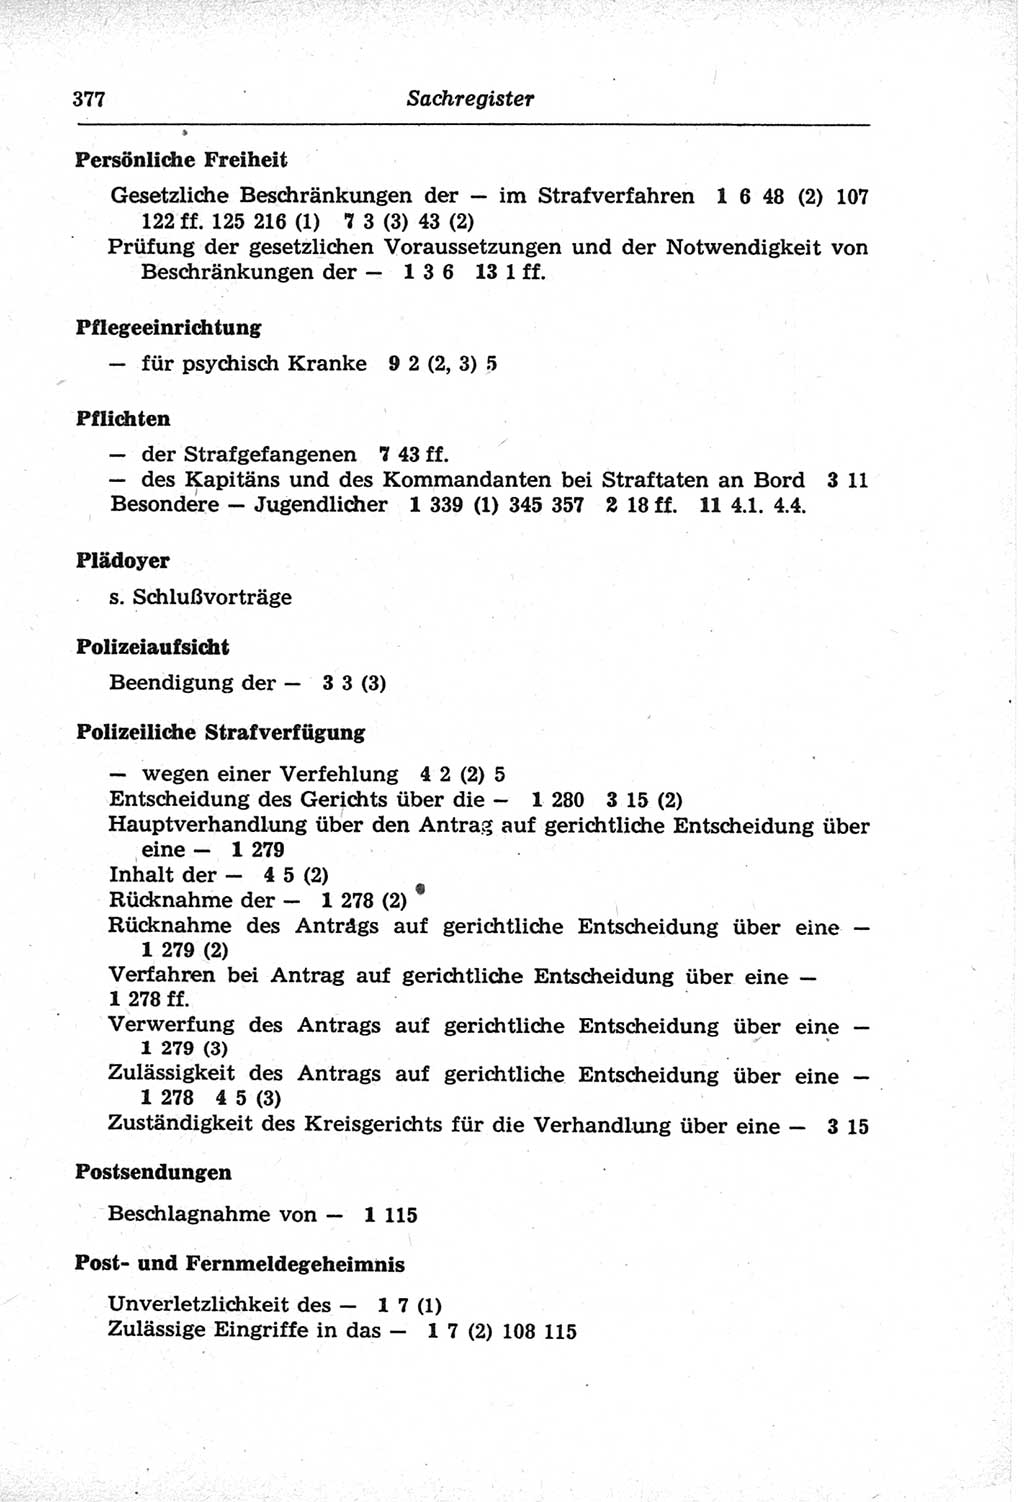 Strafprozeßordnung (StPO) der Deutschen Demokratischen Republik (DDR) und angrenzende Gesetze und Bestimmungen 1968, Seite 377 (StPO Ges. Bstgn. DDR 1968, S. 377)